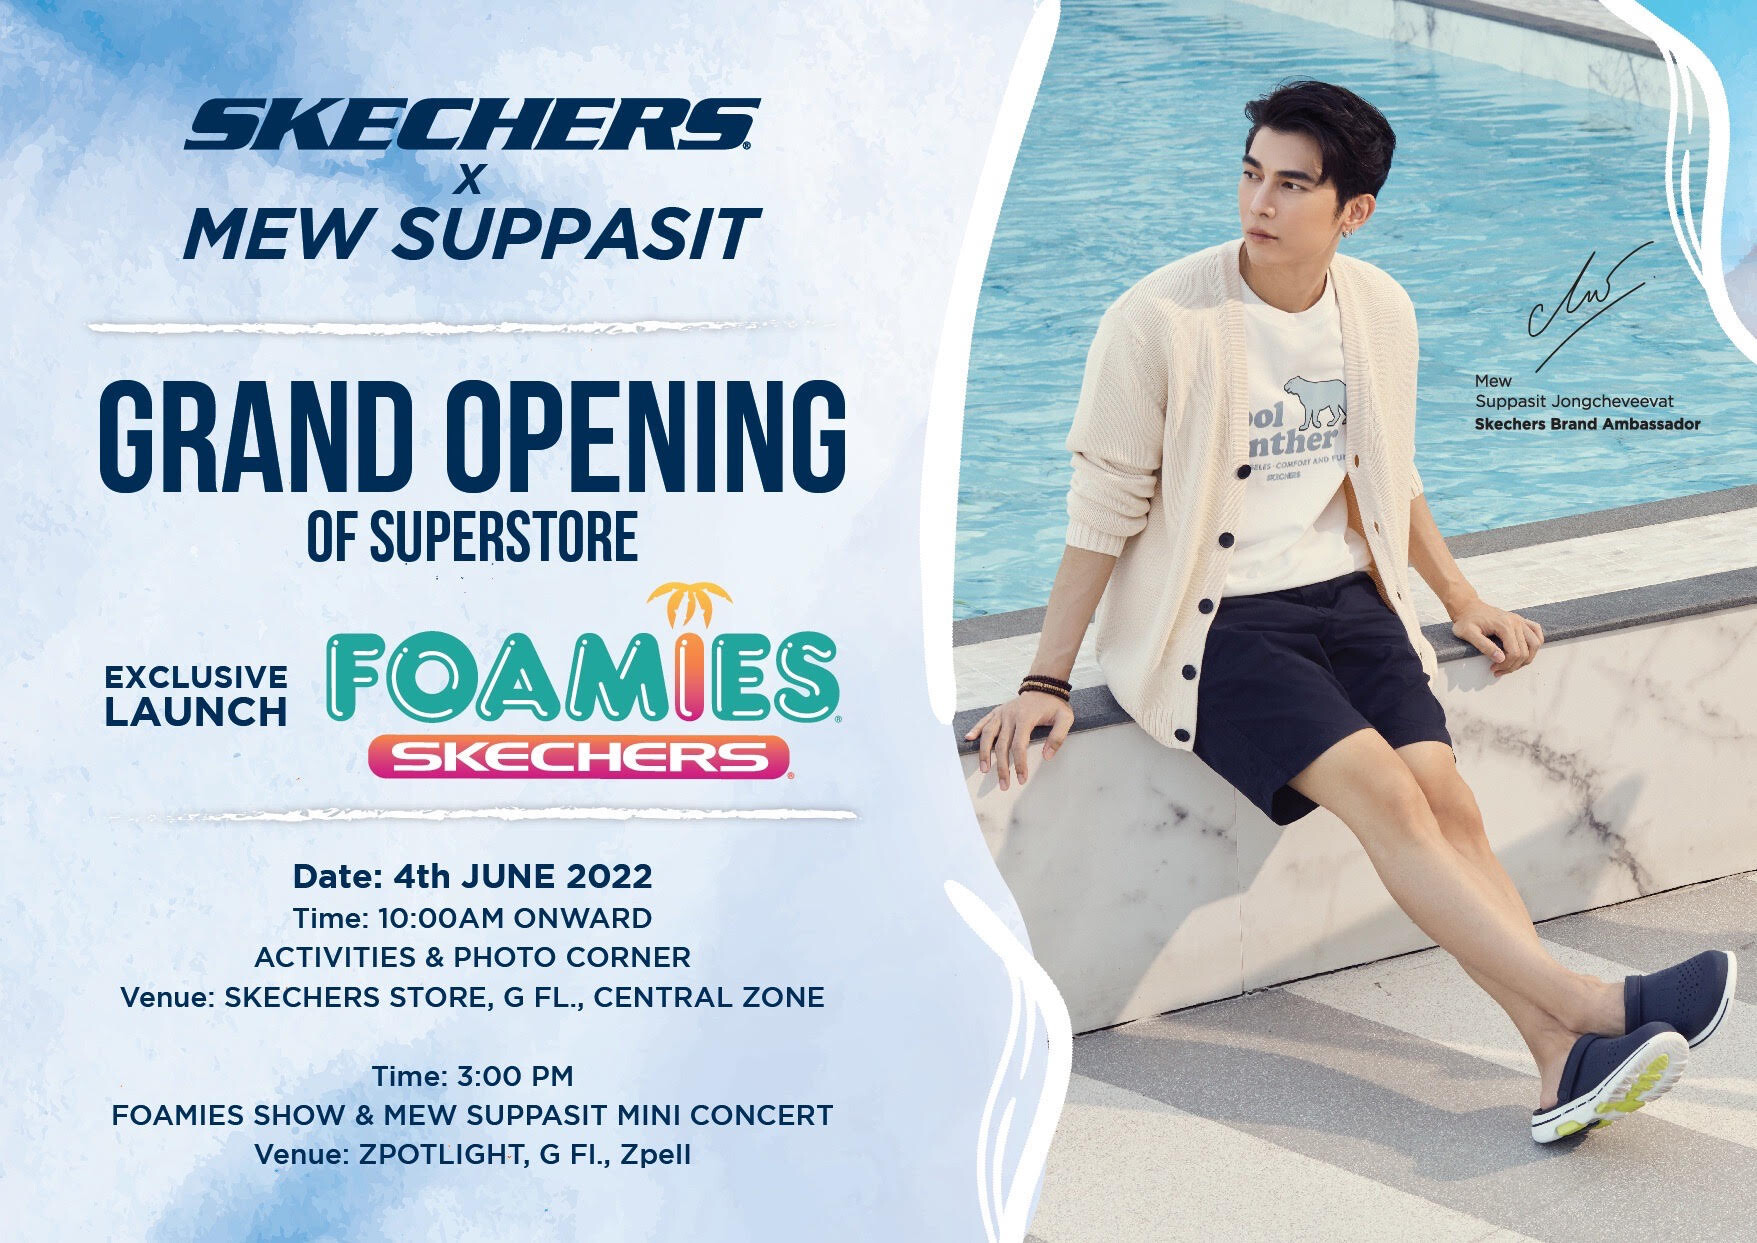 สเก็ตเชอร์ส ประเทศไทย จัดงานฉลองเปิดร้าน "สเก็ตเชอร์ส ซุปเปอร์สโตร์" (Skechers Superstore) แห่งใหม่ สาขาฟิวเจอร์พาร์ค รังสิต